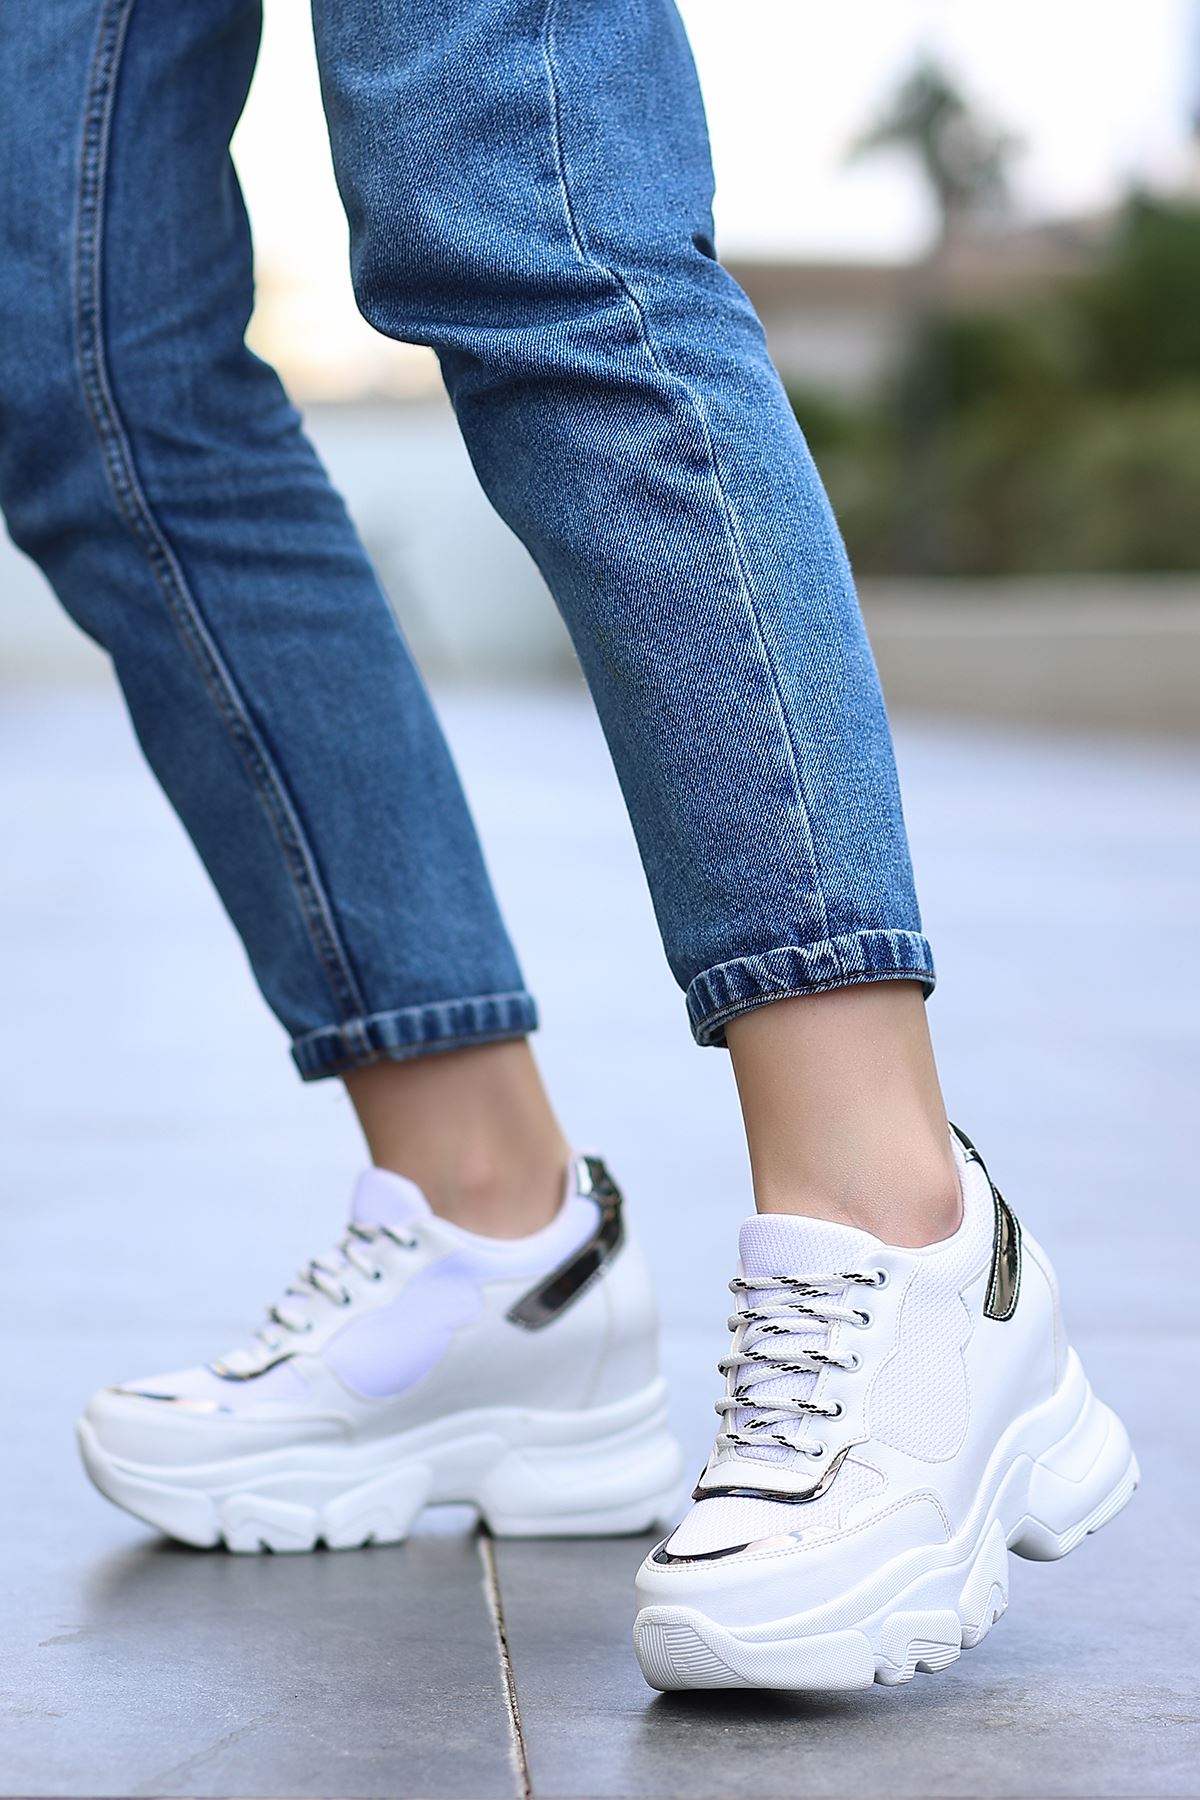 Ricka Beyaz Fileli Gri Hologram Mat Deri Bağcık Detay Yüksek Taban Kadın Spor Ayakkabı 